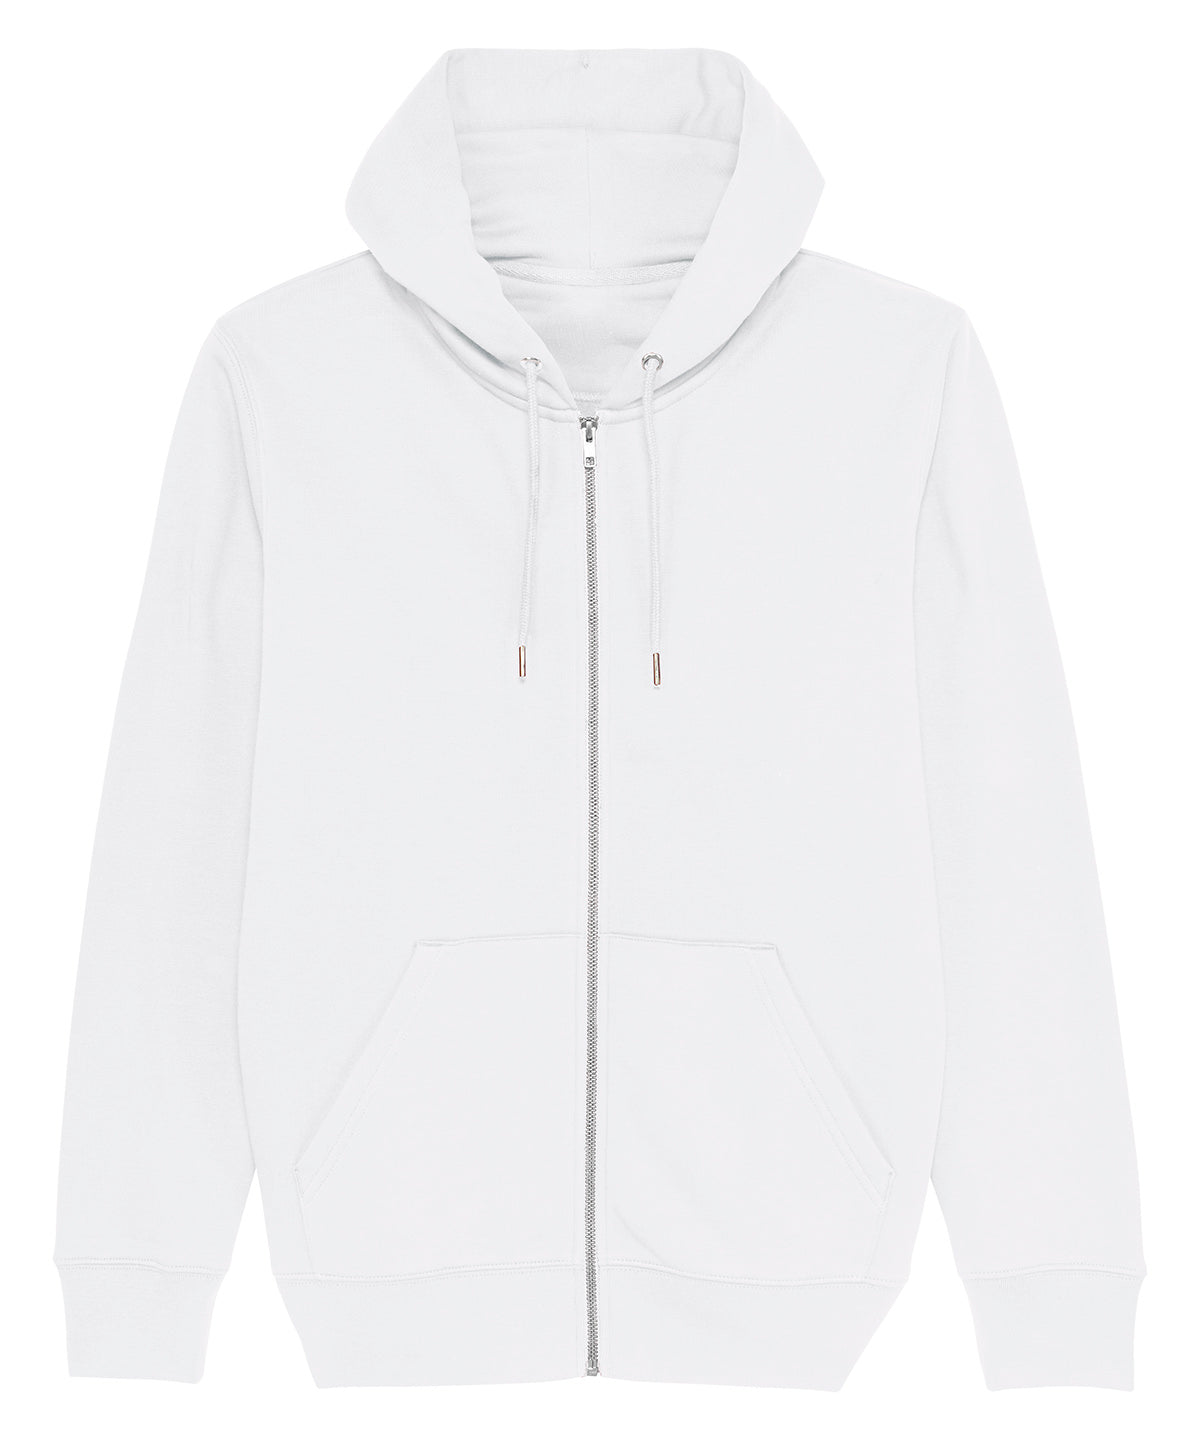 Stanley/Stella Cultivator, Unisex Iconic Zip-Thru Hoodie Sweatshirt  White